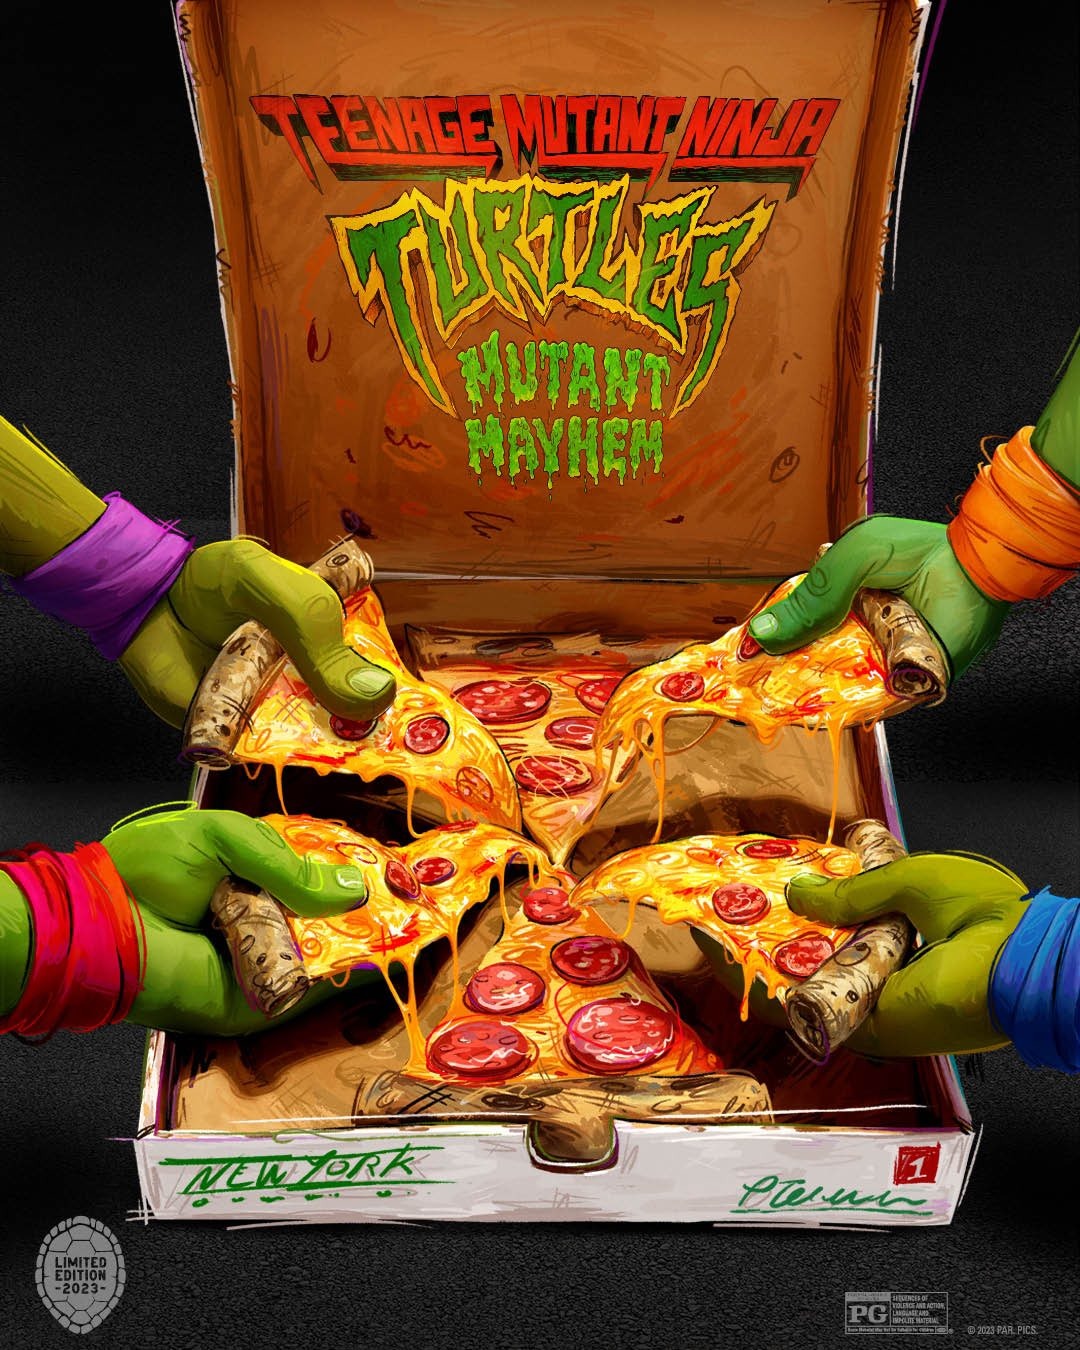 Extra Large Movie Poster Image for Teenage Mutant Ninja Turtles: Mutant Mayhem (#36 of 48)